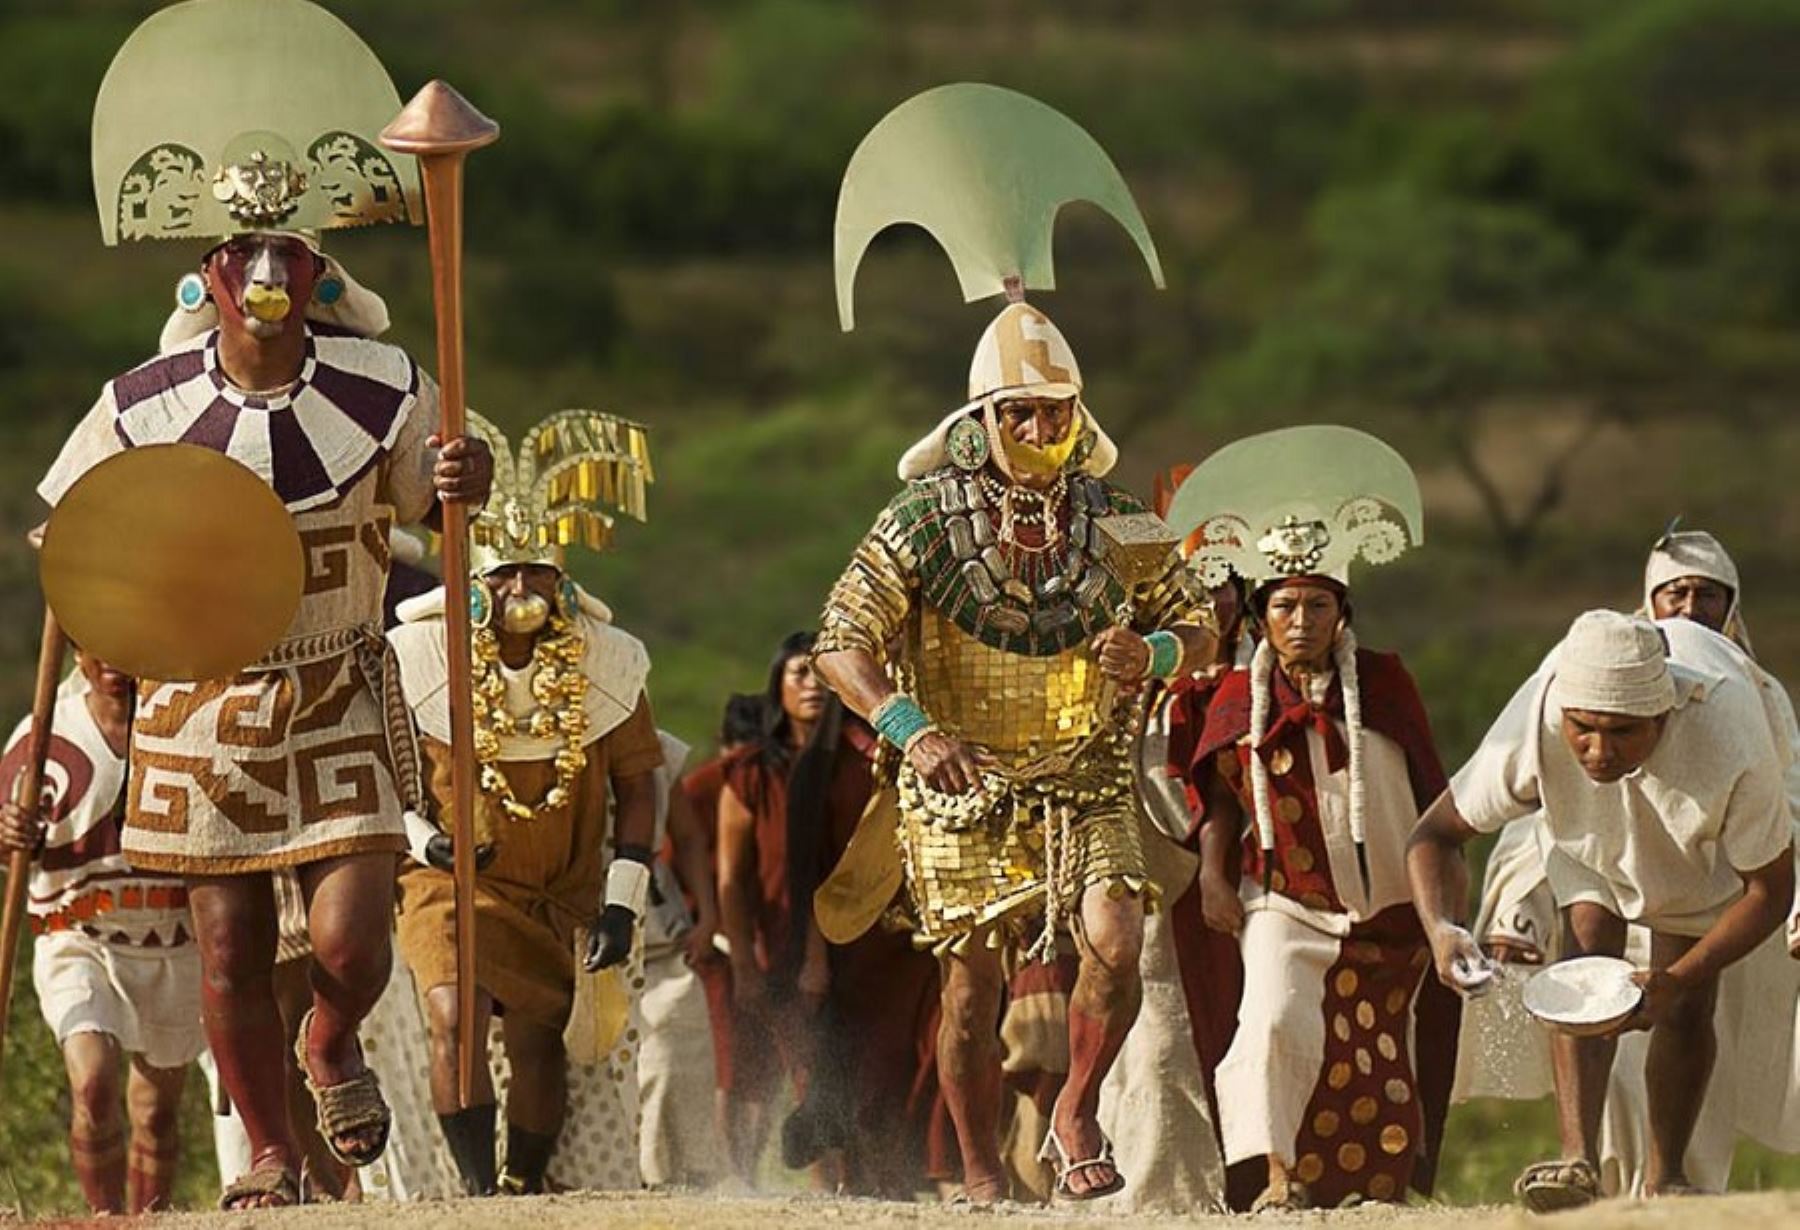 Recorrer la Ruta Moche es experimentar una travesía turística única a través de las regiones Lambayeque y La Libertad, que nos traslada en el tiempo y combina la riqueza cultural ancestral de las más importantes civilizaciones precolombinas de la costa norte peruana: Moche, Sicán y Chimú.